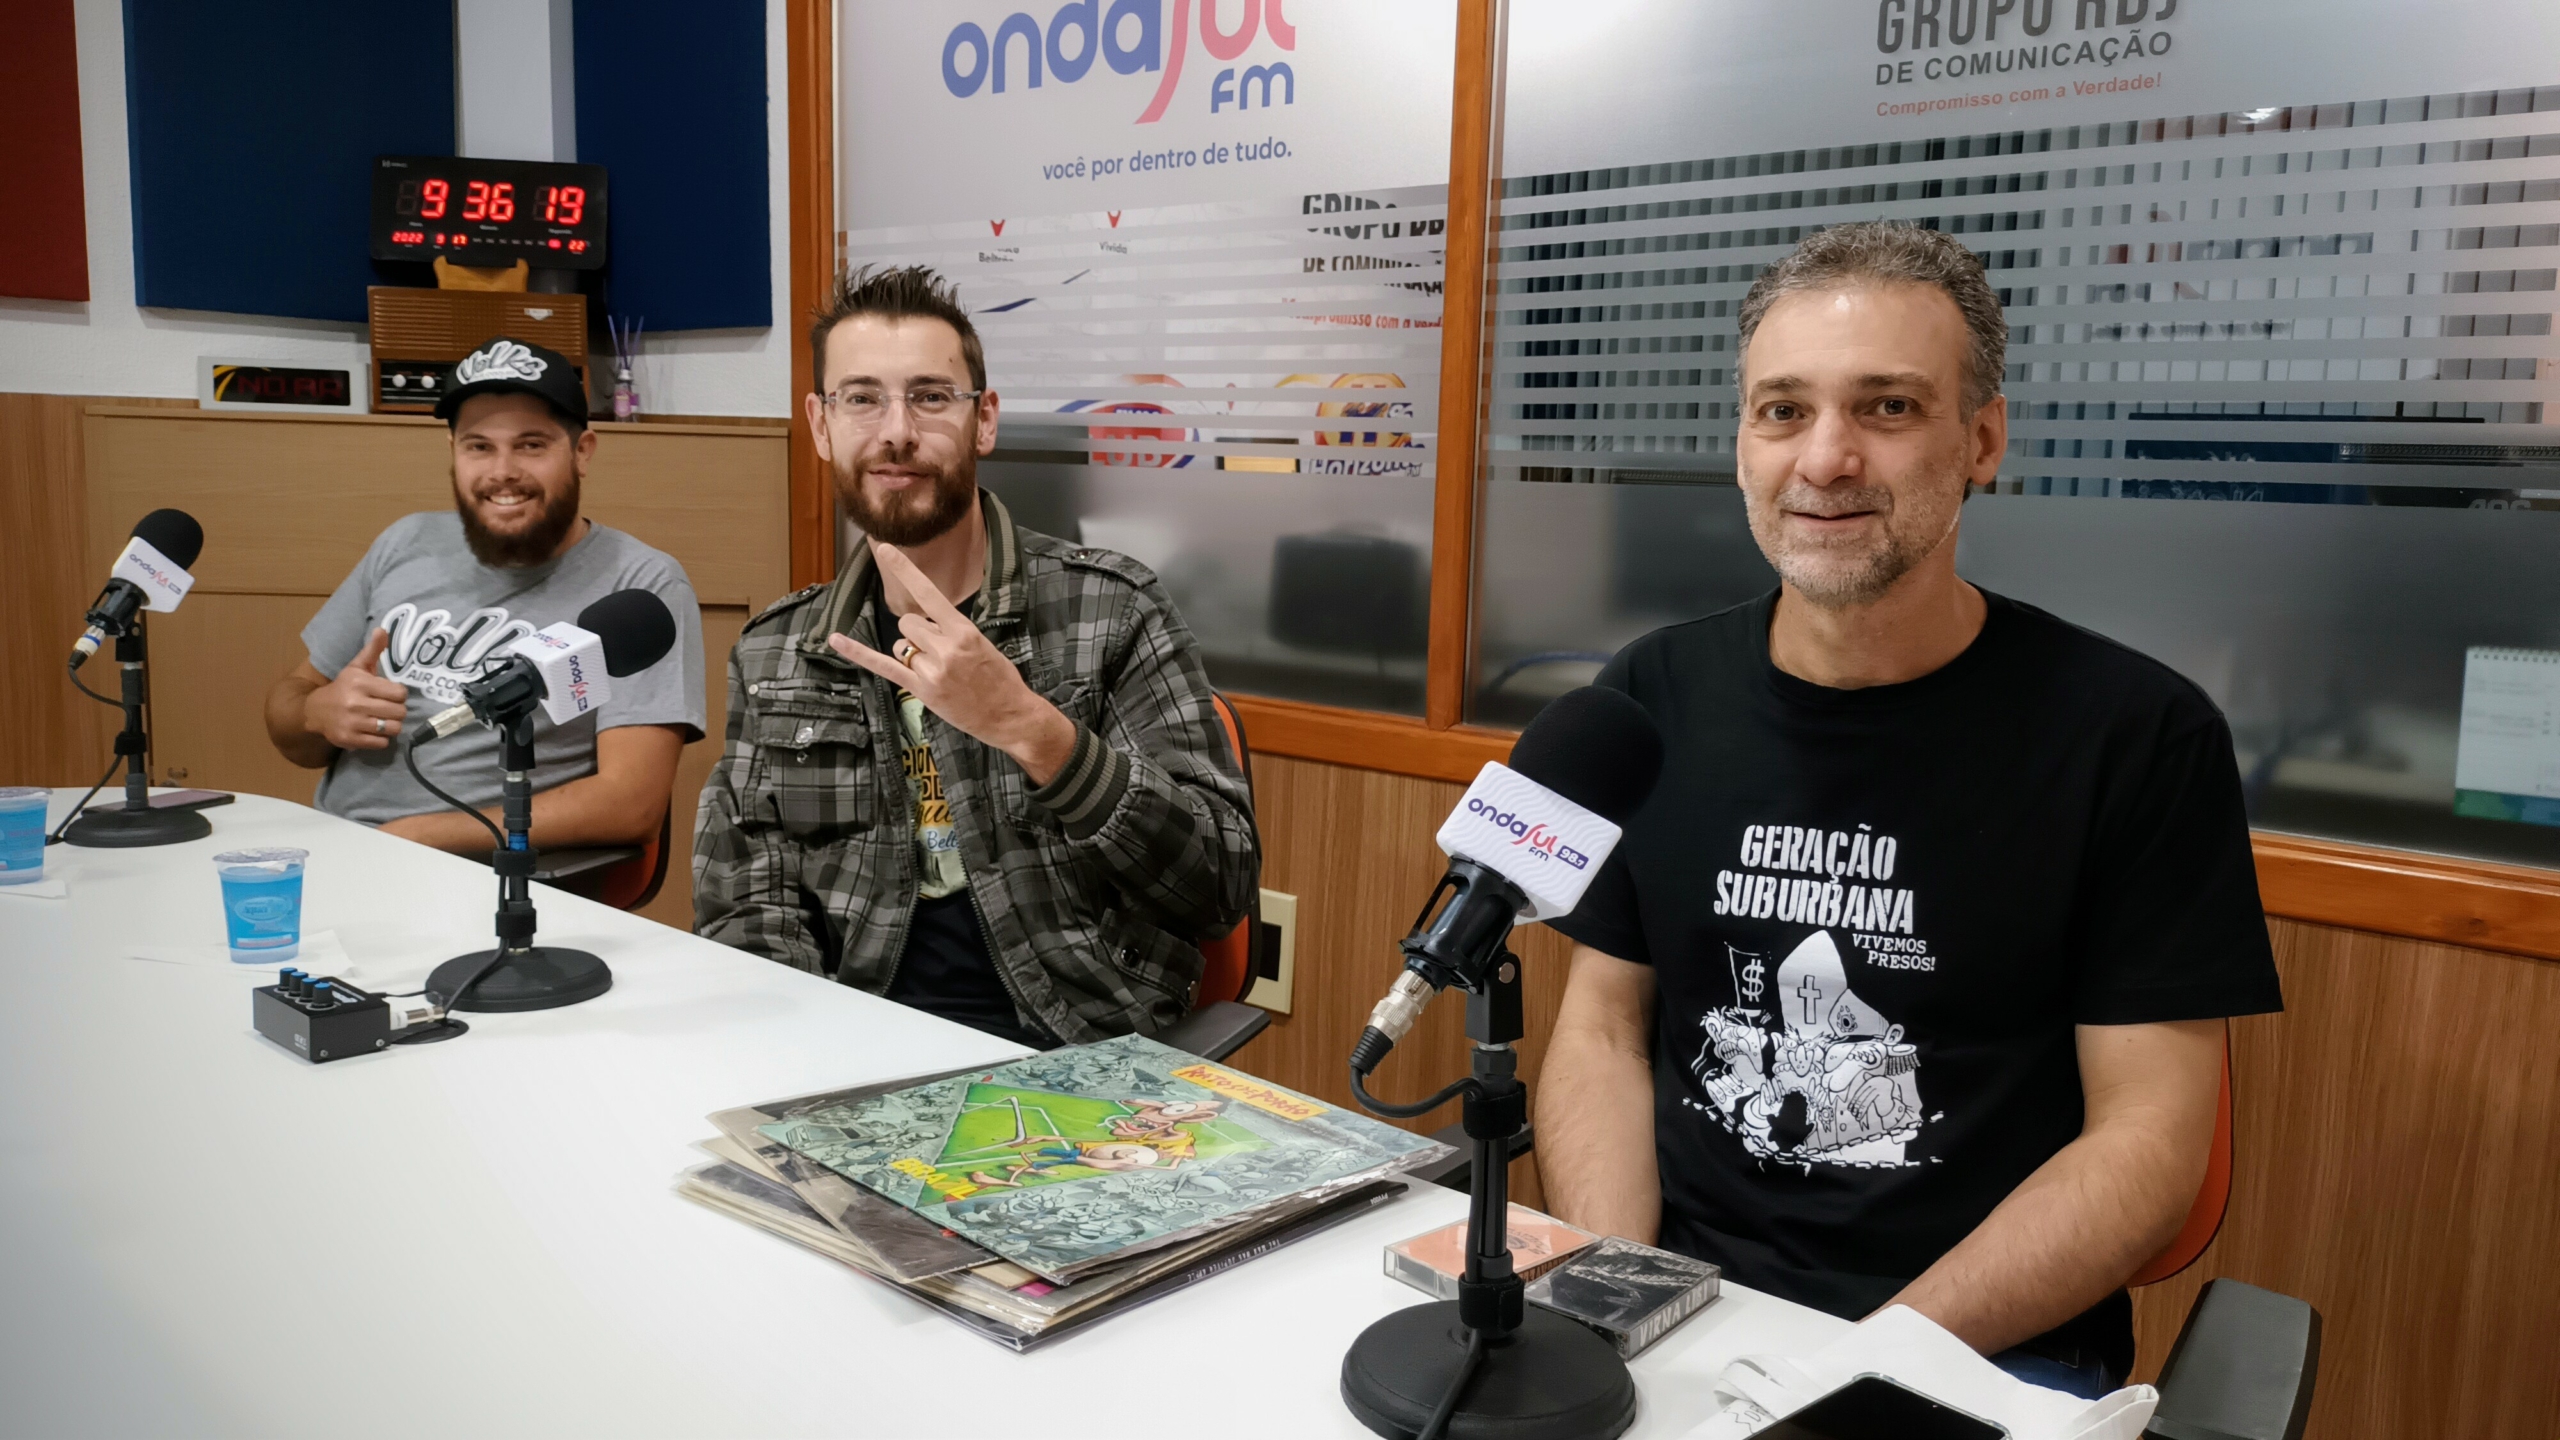 Podcast RBJ: Neste domingo (18) tem encontro de colecionadores em Francisco  Beltrão - Grupo RBJ de ComunicaçãoGrupo RBJ de Comunicação